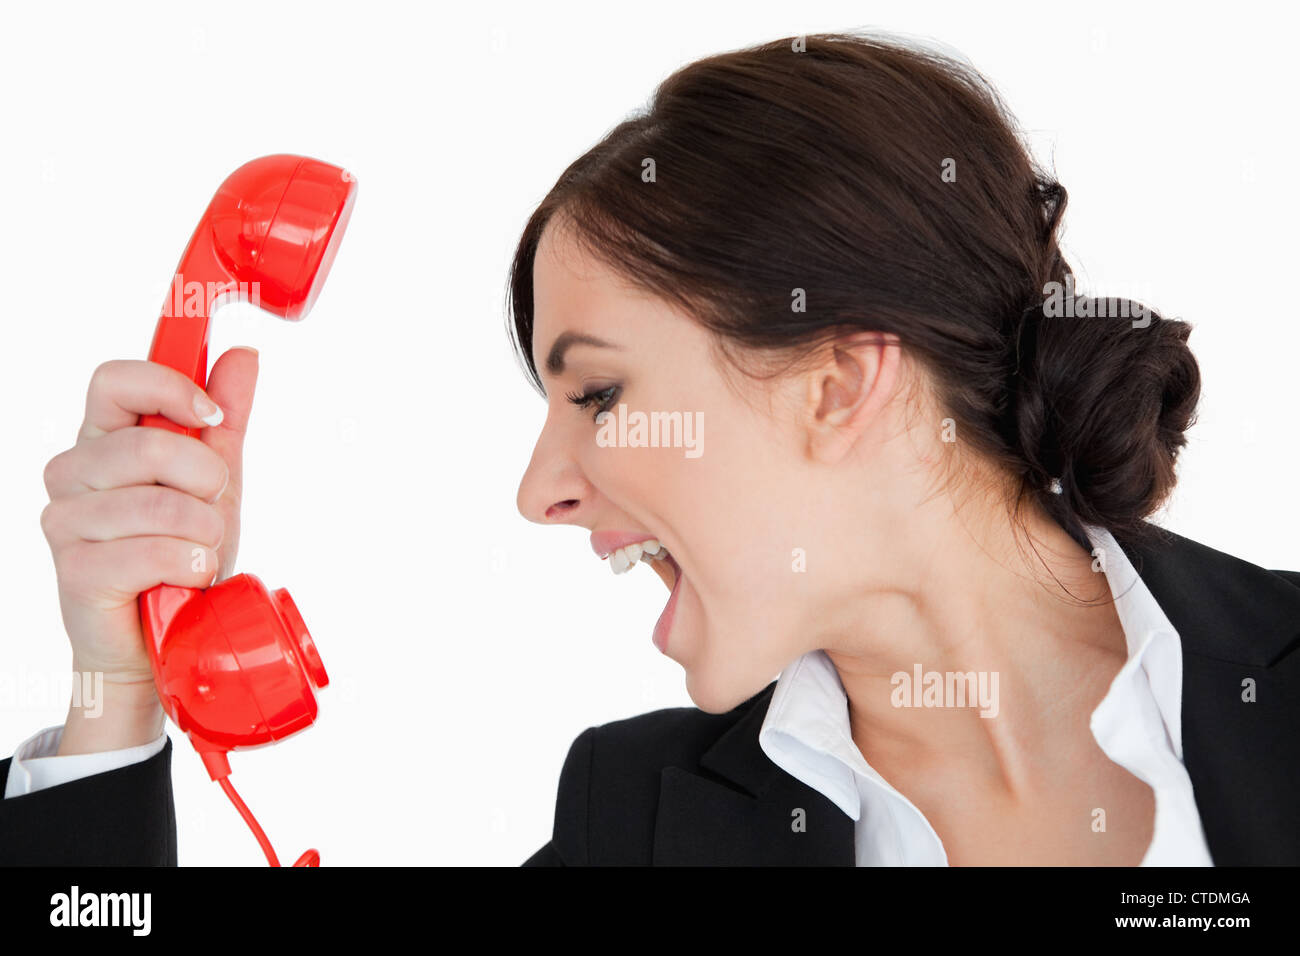 06 звонок. Держит телефонную трубку. Девушка держит телефонную трубку. Женская рука с трубкой телефона. Девушка кричит в трубку.